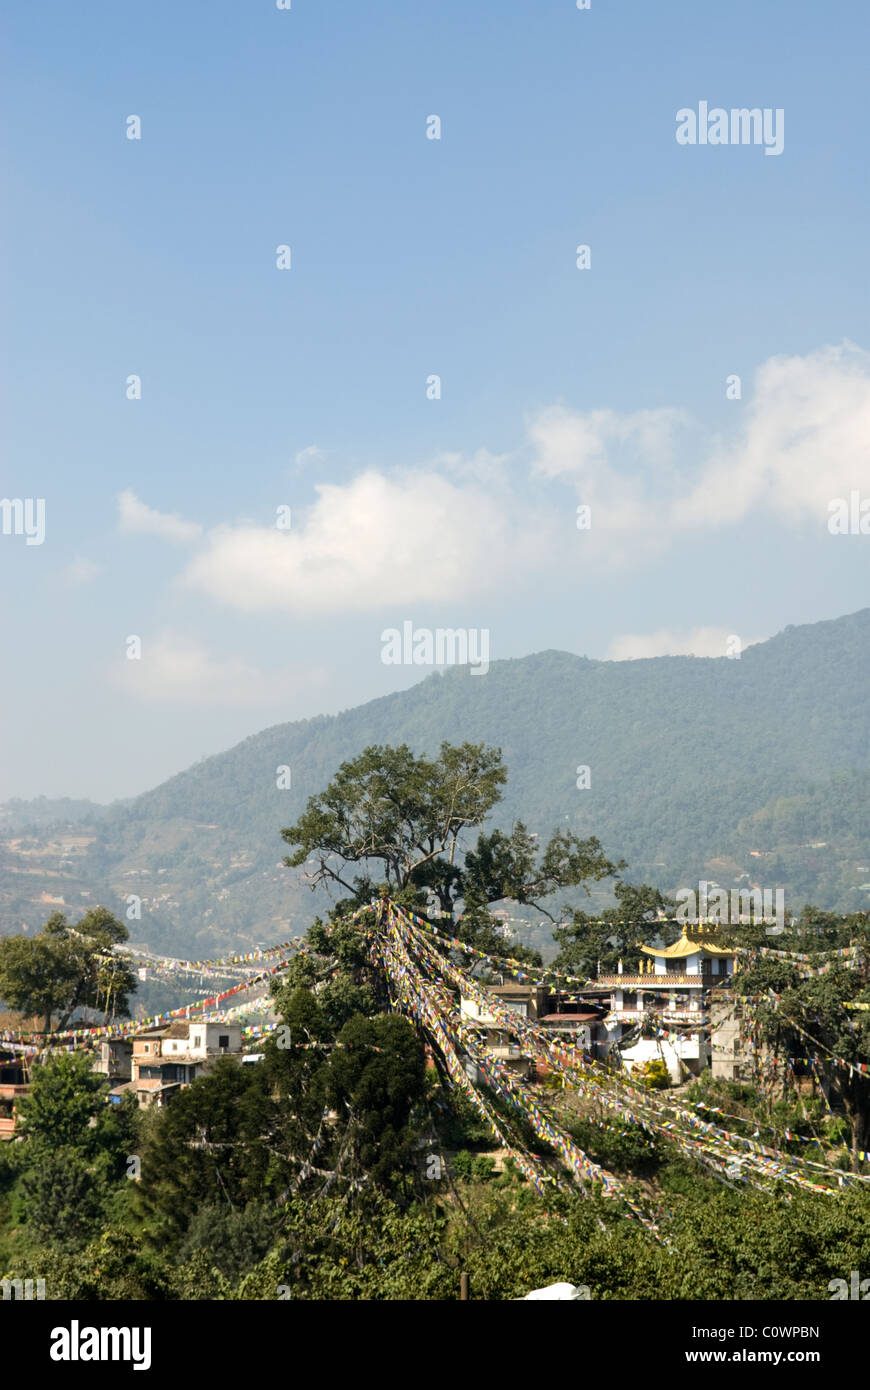 View of monasteries from Swayambhunath, Kathmandu, Nepal. Stock Photo